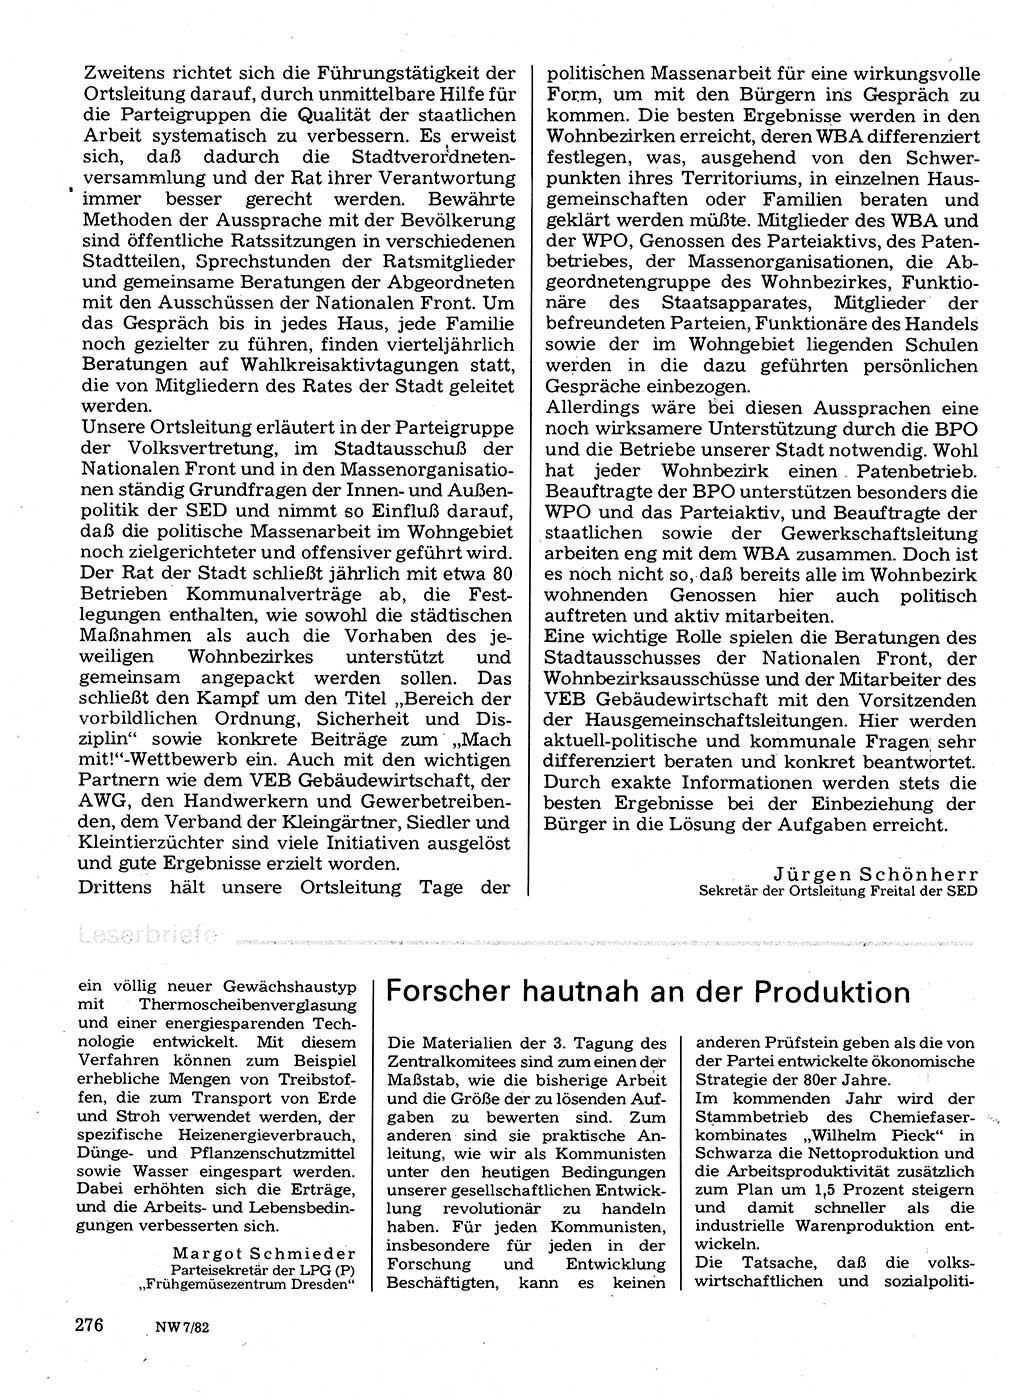 Neuer Weg (NW), Organ des Zentralkomitees (ZK) der SED (Sozialistische Einheitspartei Deutschlands) für Fragen des Parteilebens, 37. Jahrgang [Deutsche Demokratische Republik (DDR)] 1982, Seite 276 (NW ZK SED DDR 1982, S. 276)